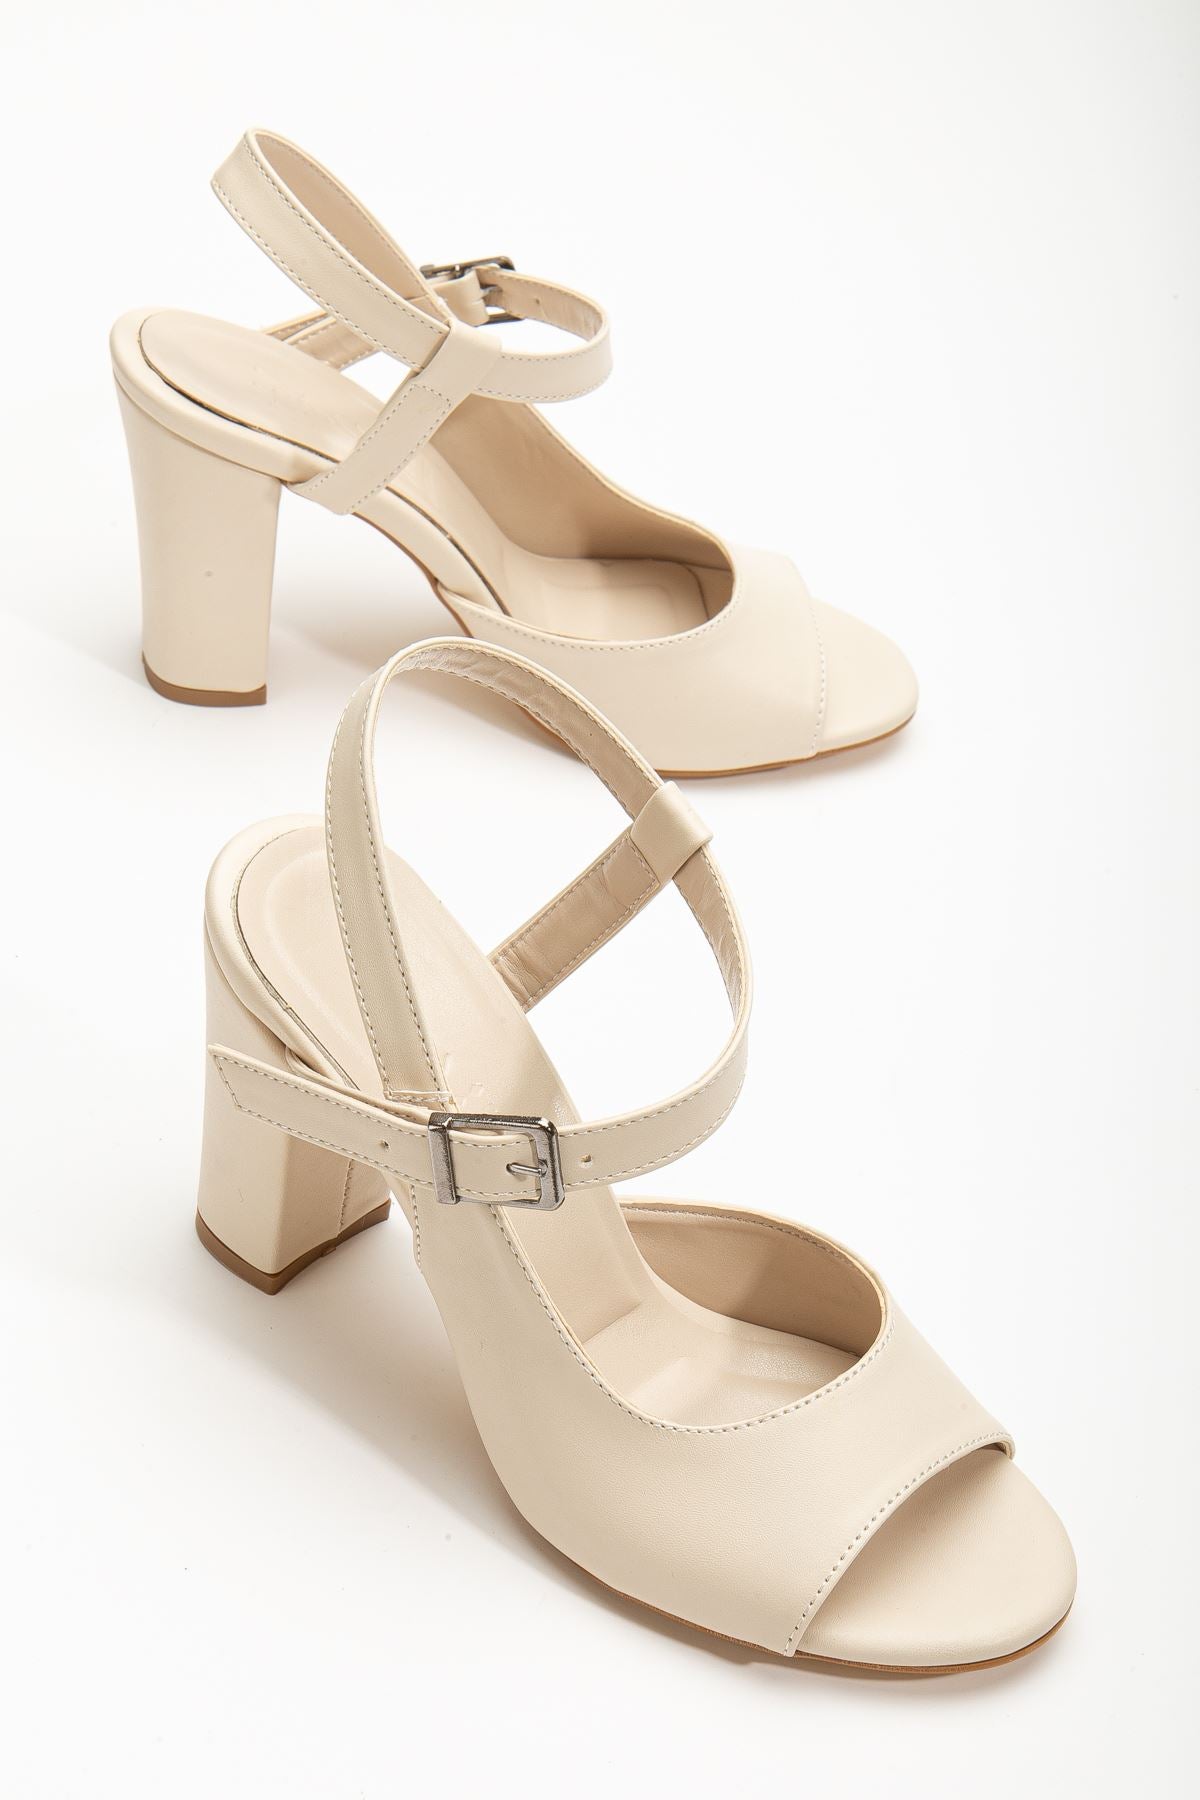 Lovisa Heeled Cream Skin Women's Shoes - STREETMODE™